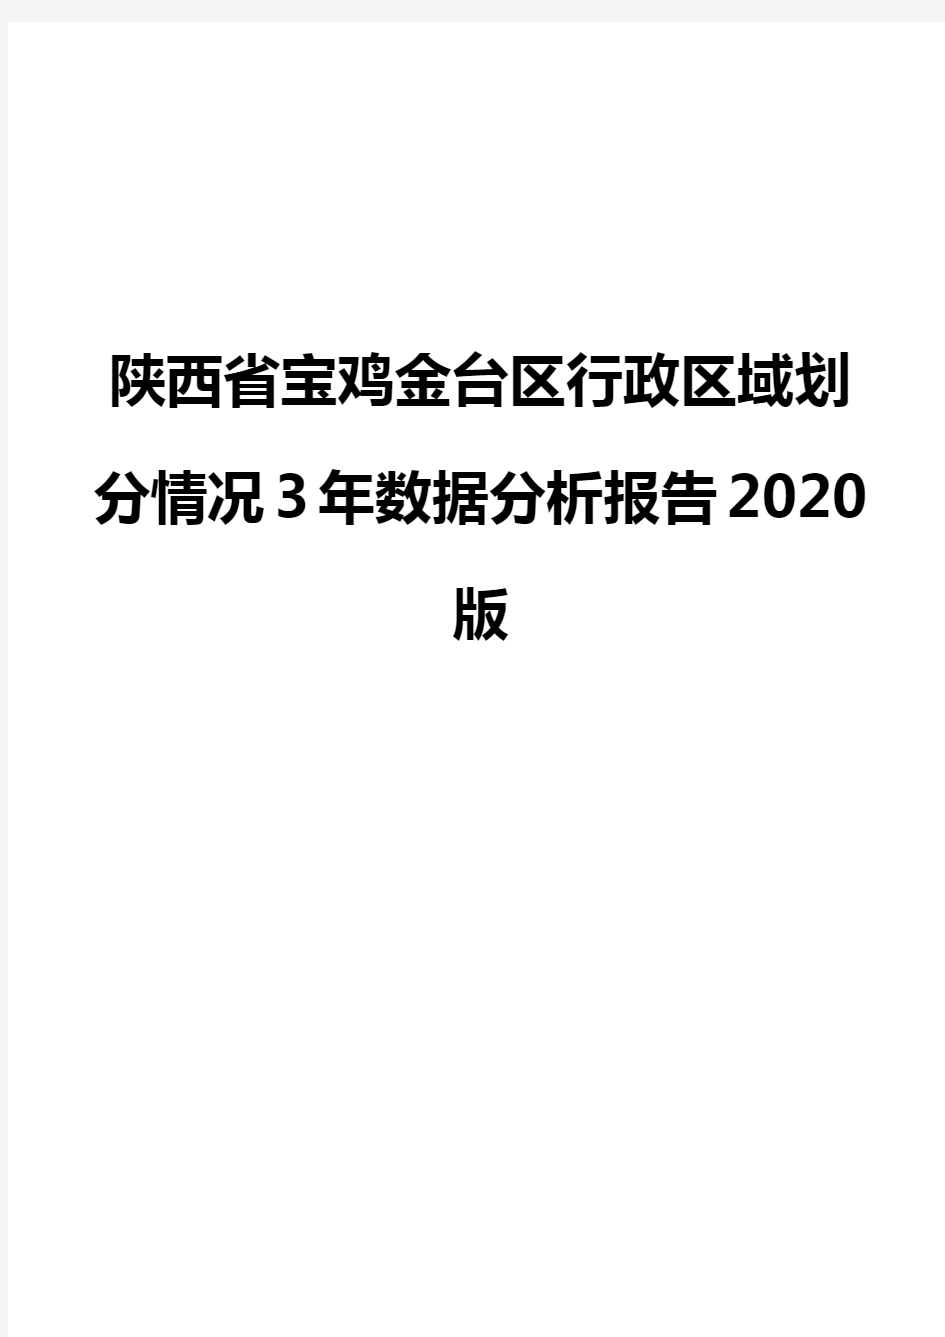 陕西省宝鸡金台区行政区域划分情况3年数据分析报告2020版